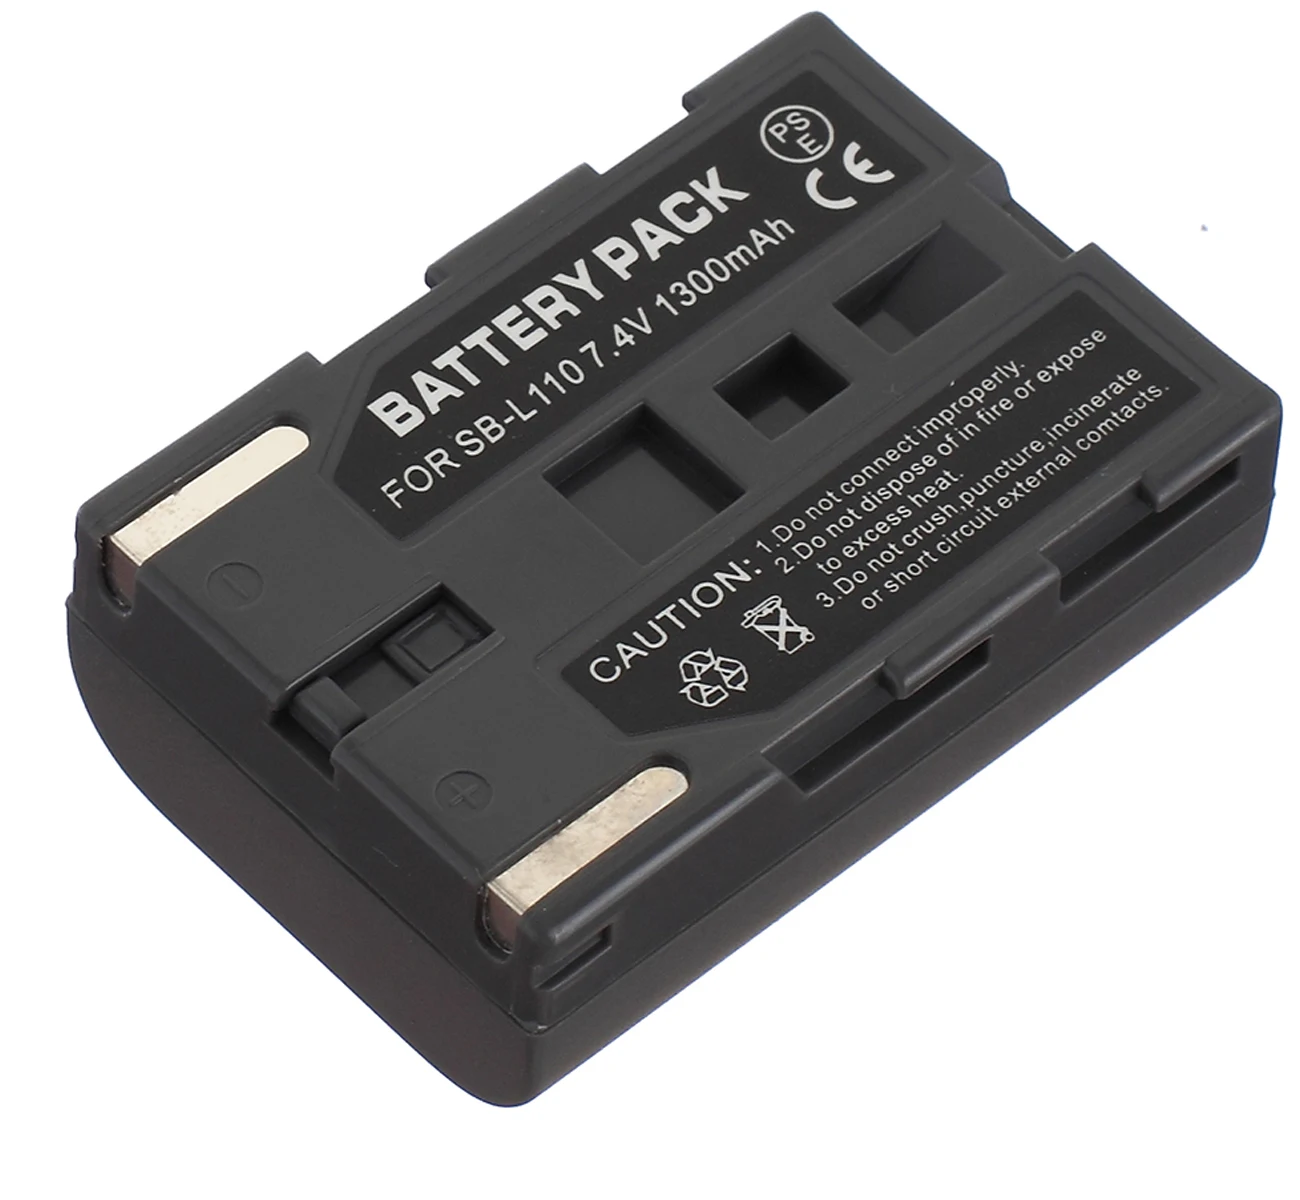 

Battery Pack for Samsung VP-D80i, VP-D81i, VP-D82i, VP-D83i, VP-D85i, VP-D87i, D87Di, VP-D93i, VP-D97i, VP-D99i Camcorder